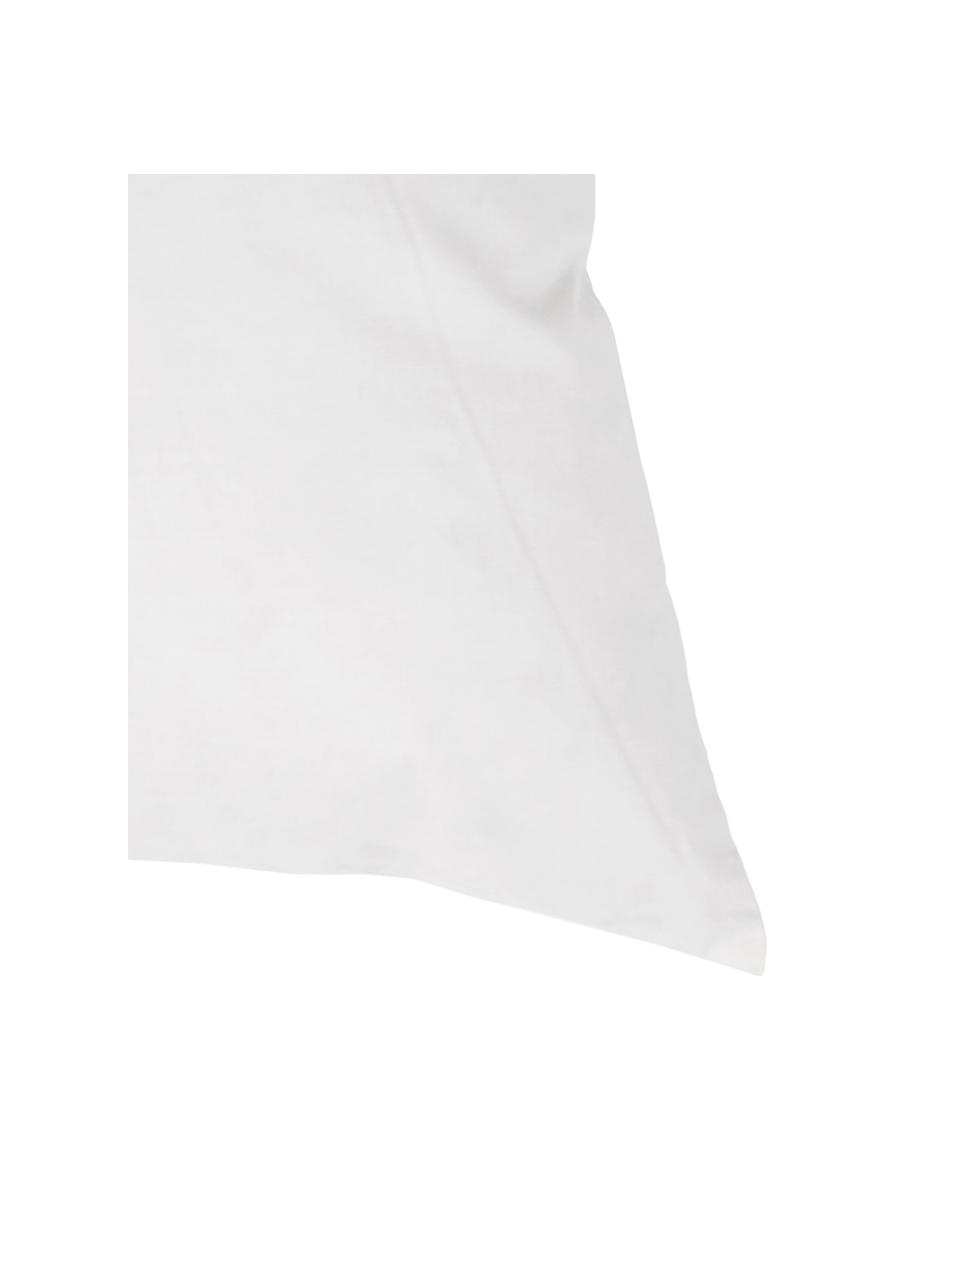 Výplň dekoračního polštáře Komfort, 30x50, výplň z peří, Bílá, Š 30 cm